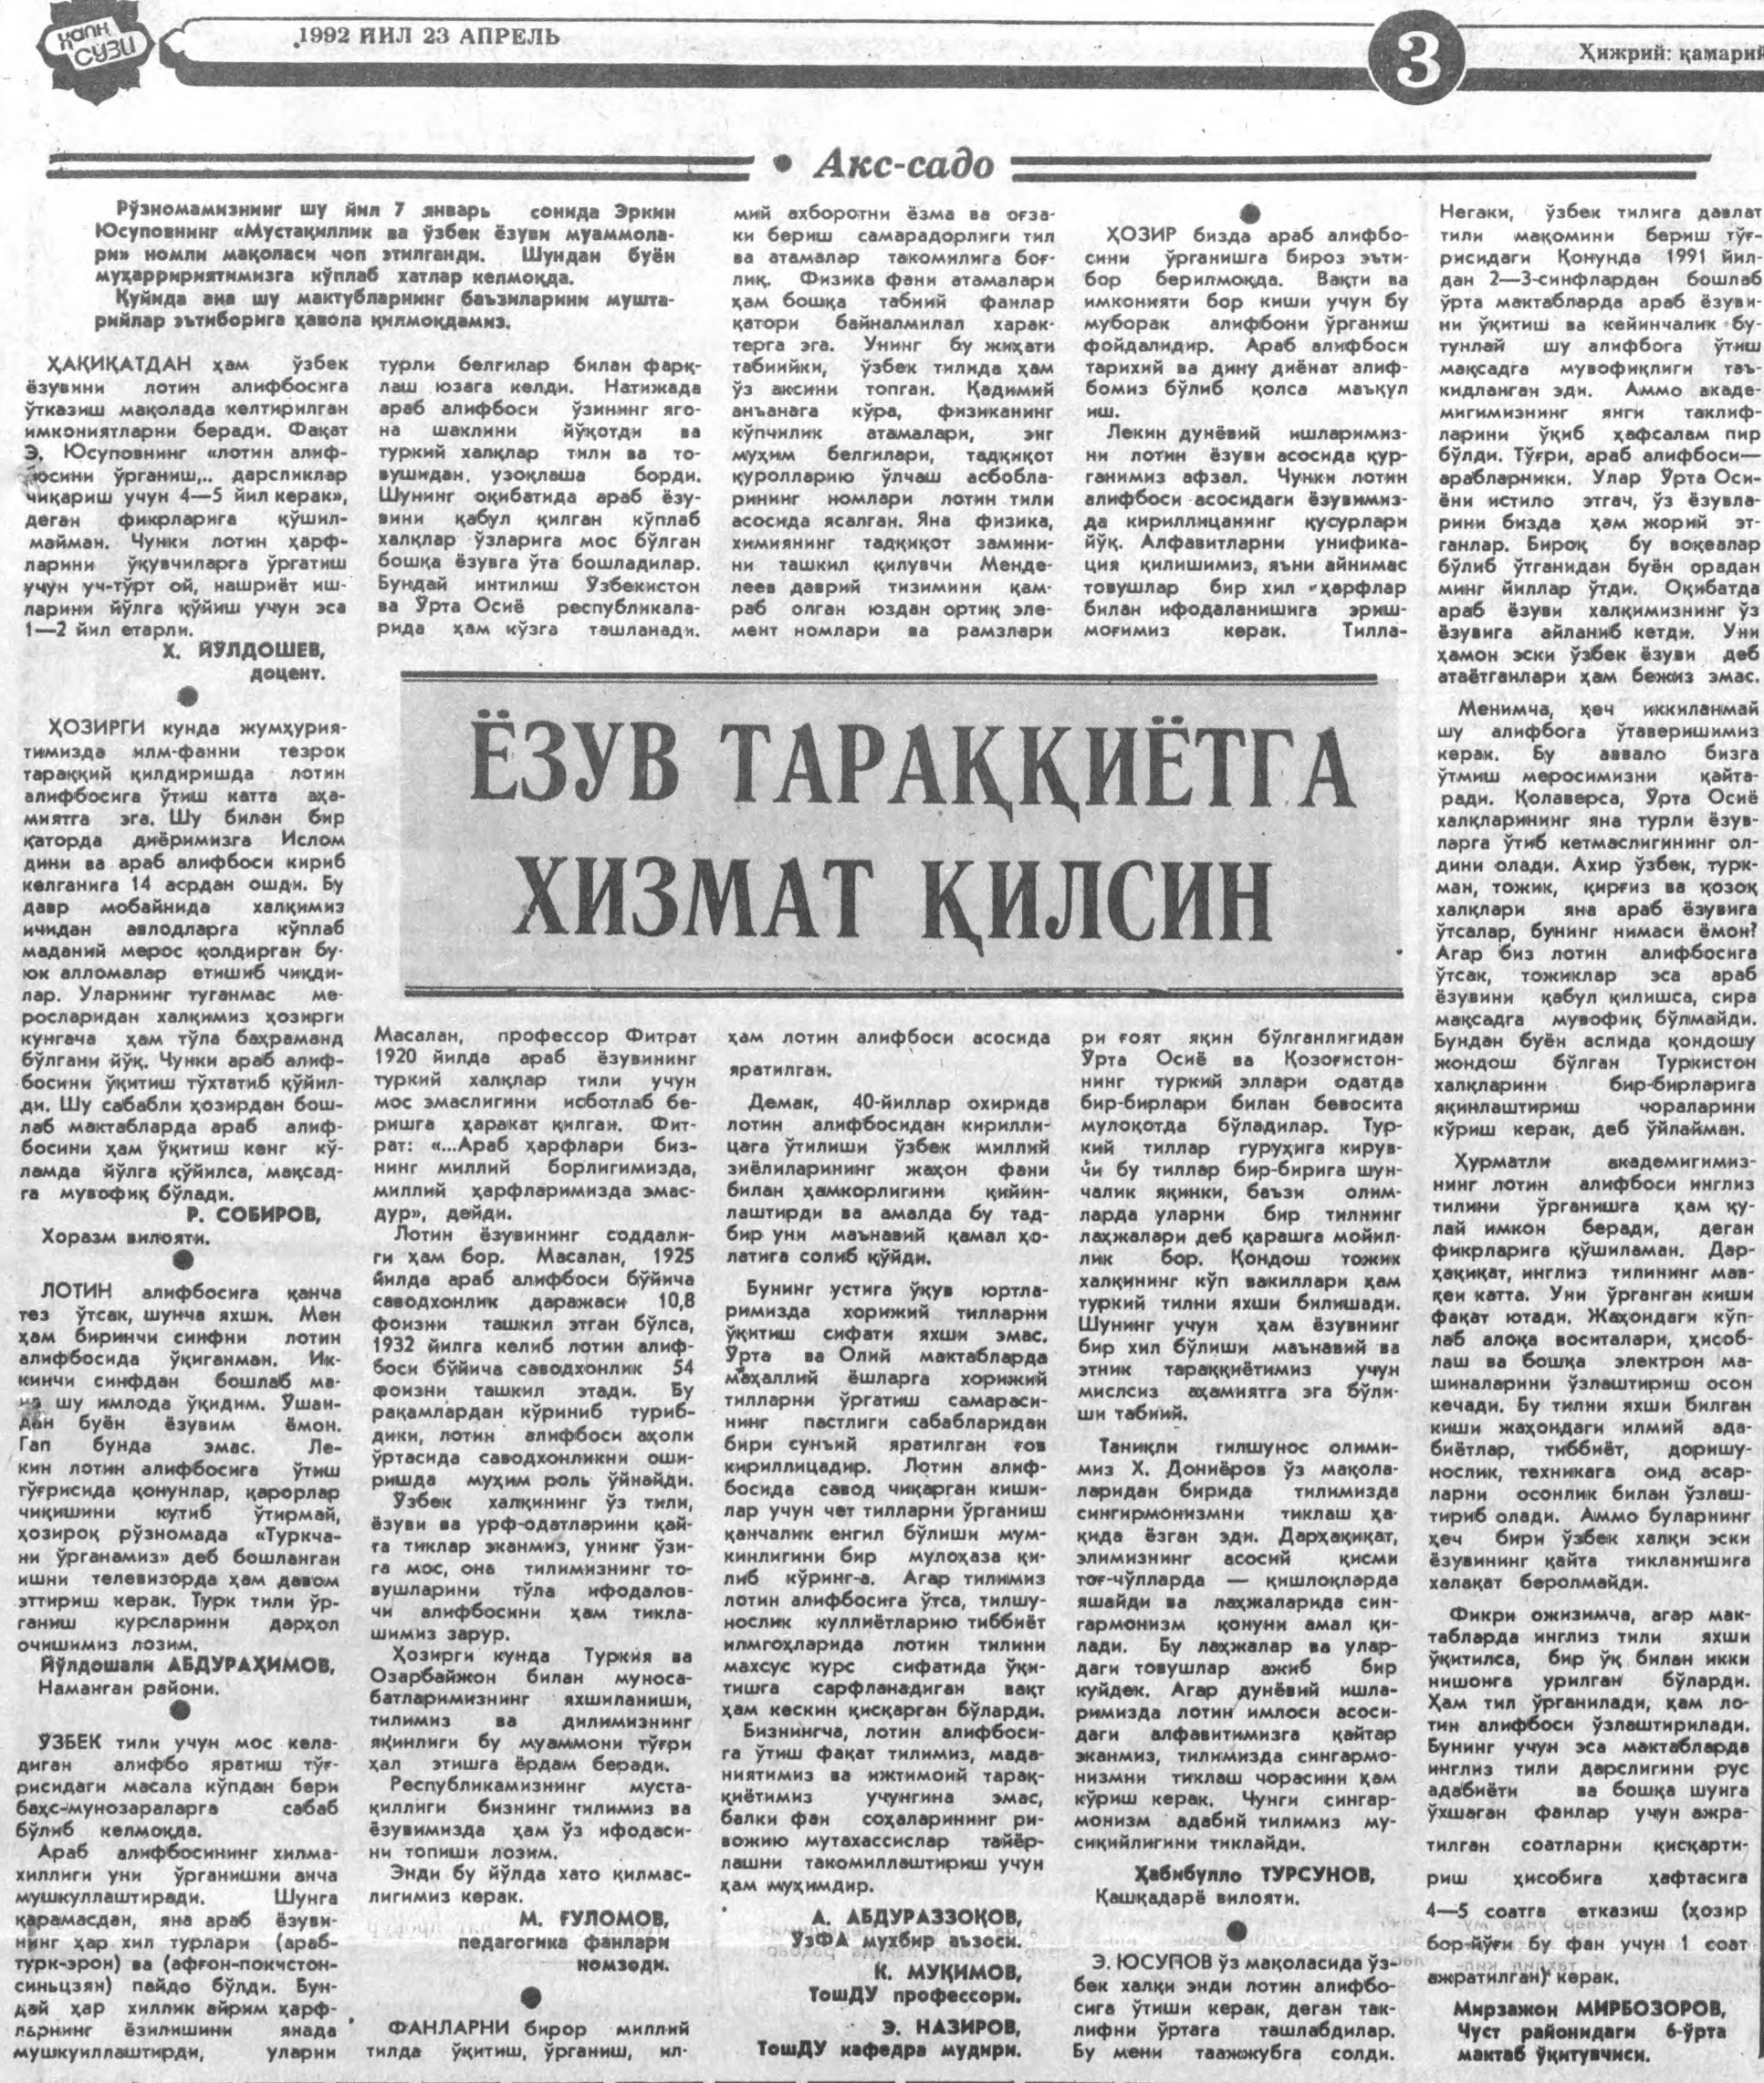 «Халқ сўзи» газетасининг 1992 йил 23 апрель сонидан лавҳа